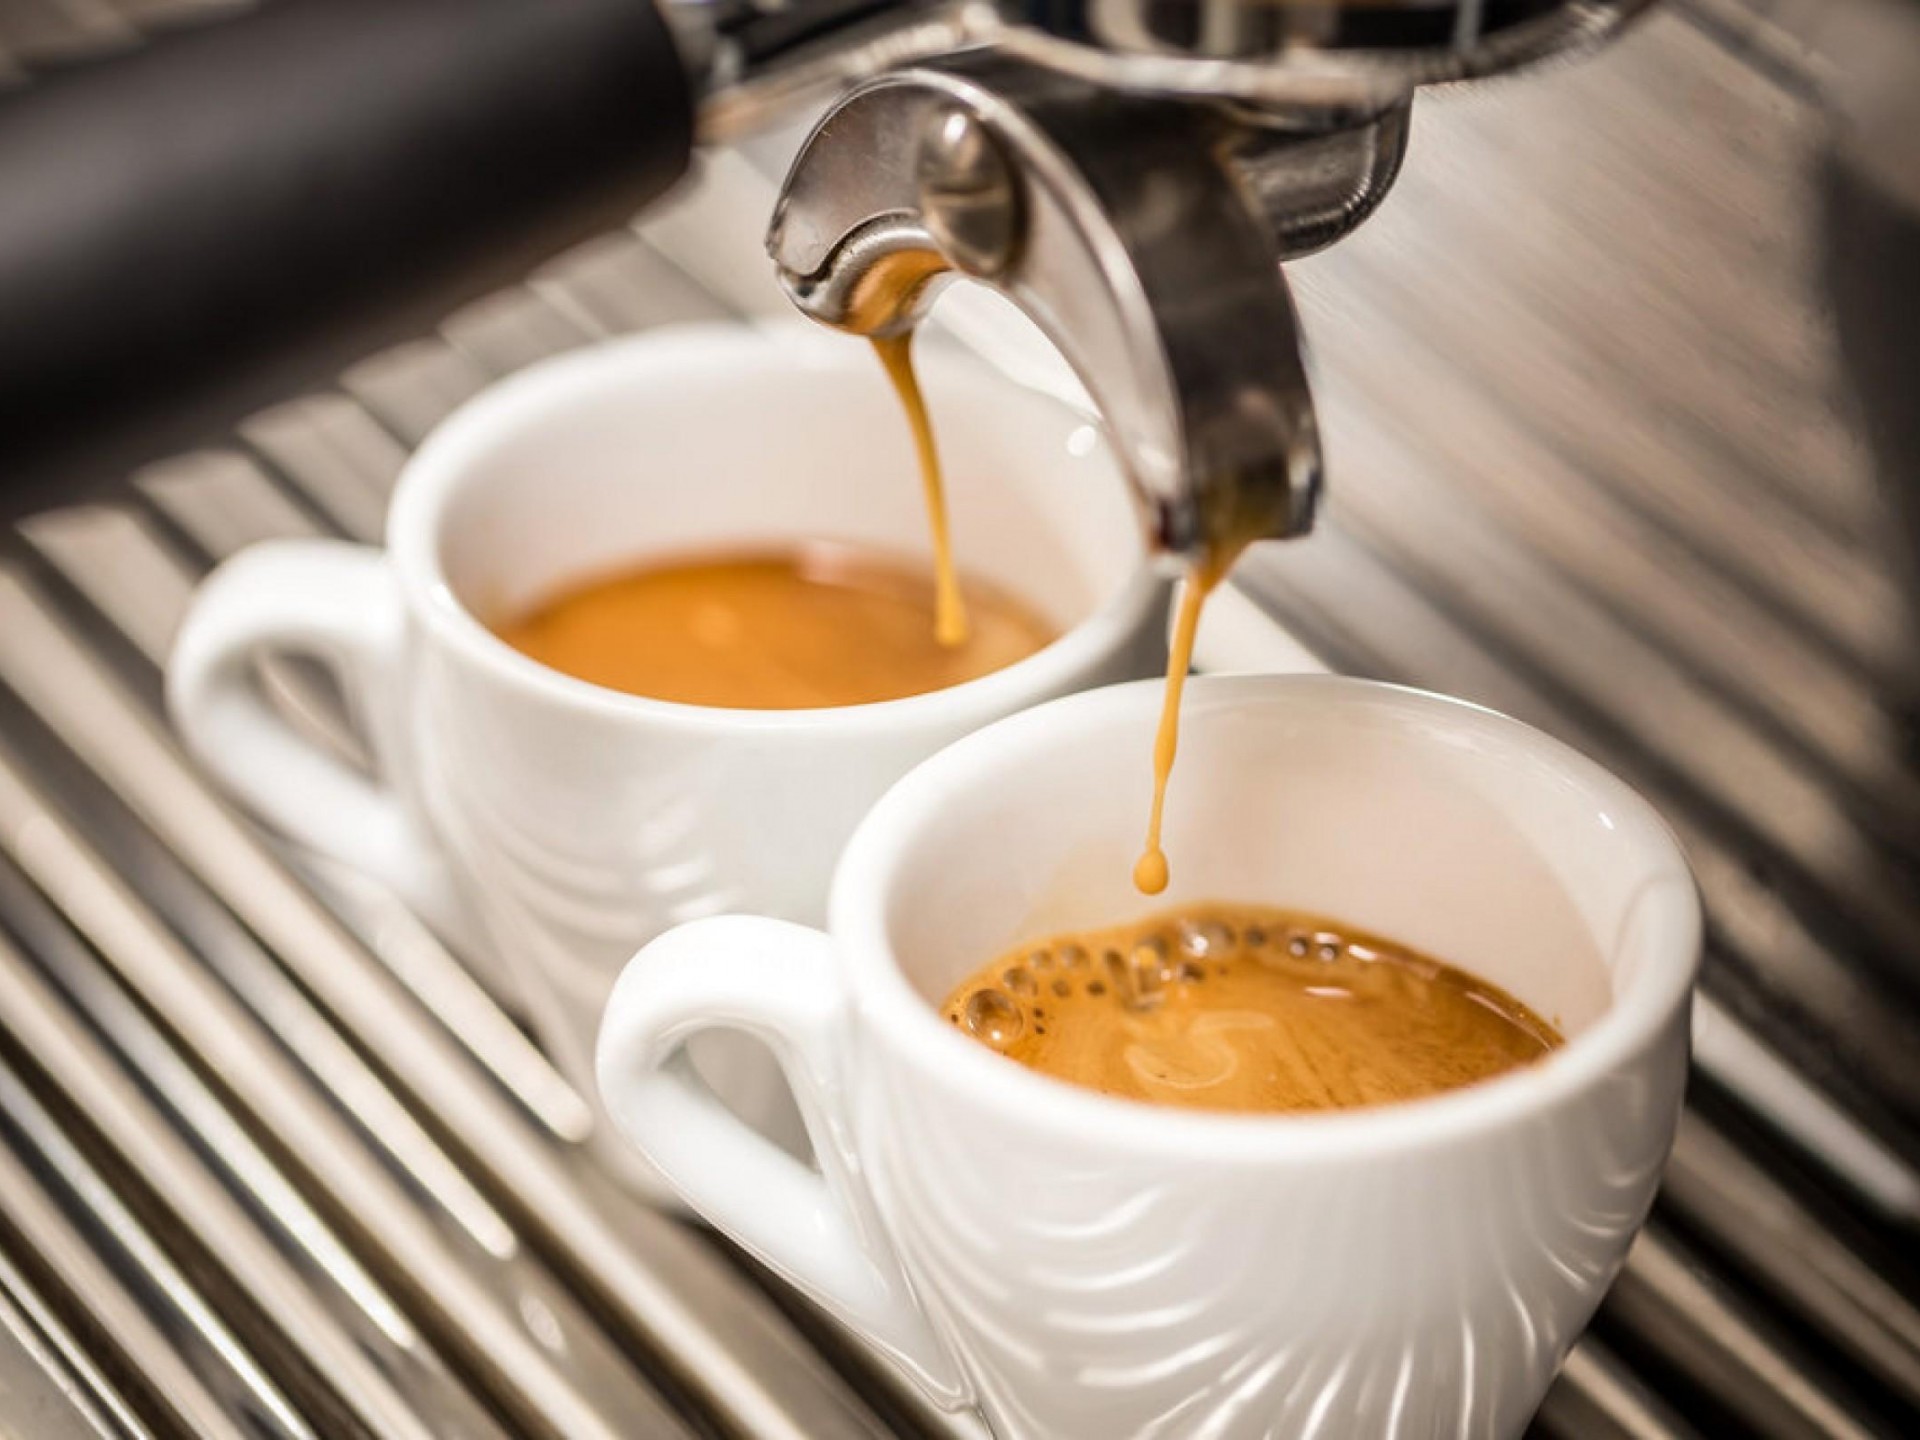 FRANCHISE CAFE  OWNER NETS OVER $100k  SOUTH WEST SYDNEY AREA...